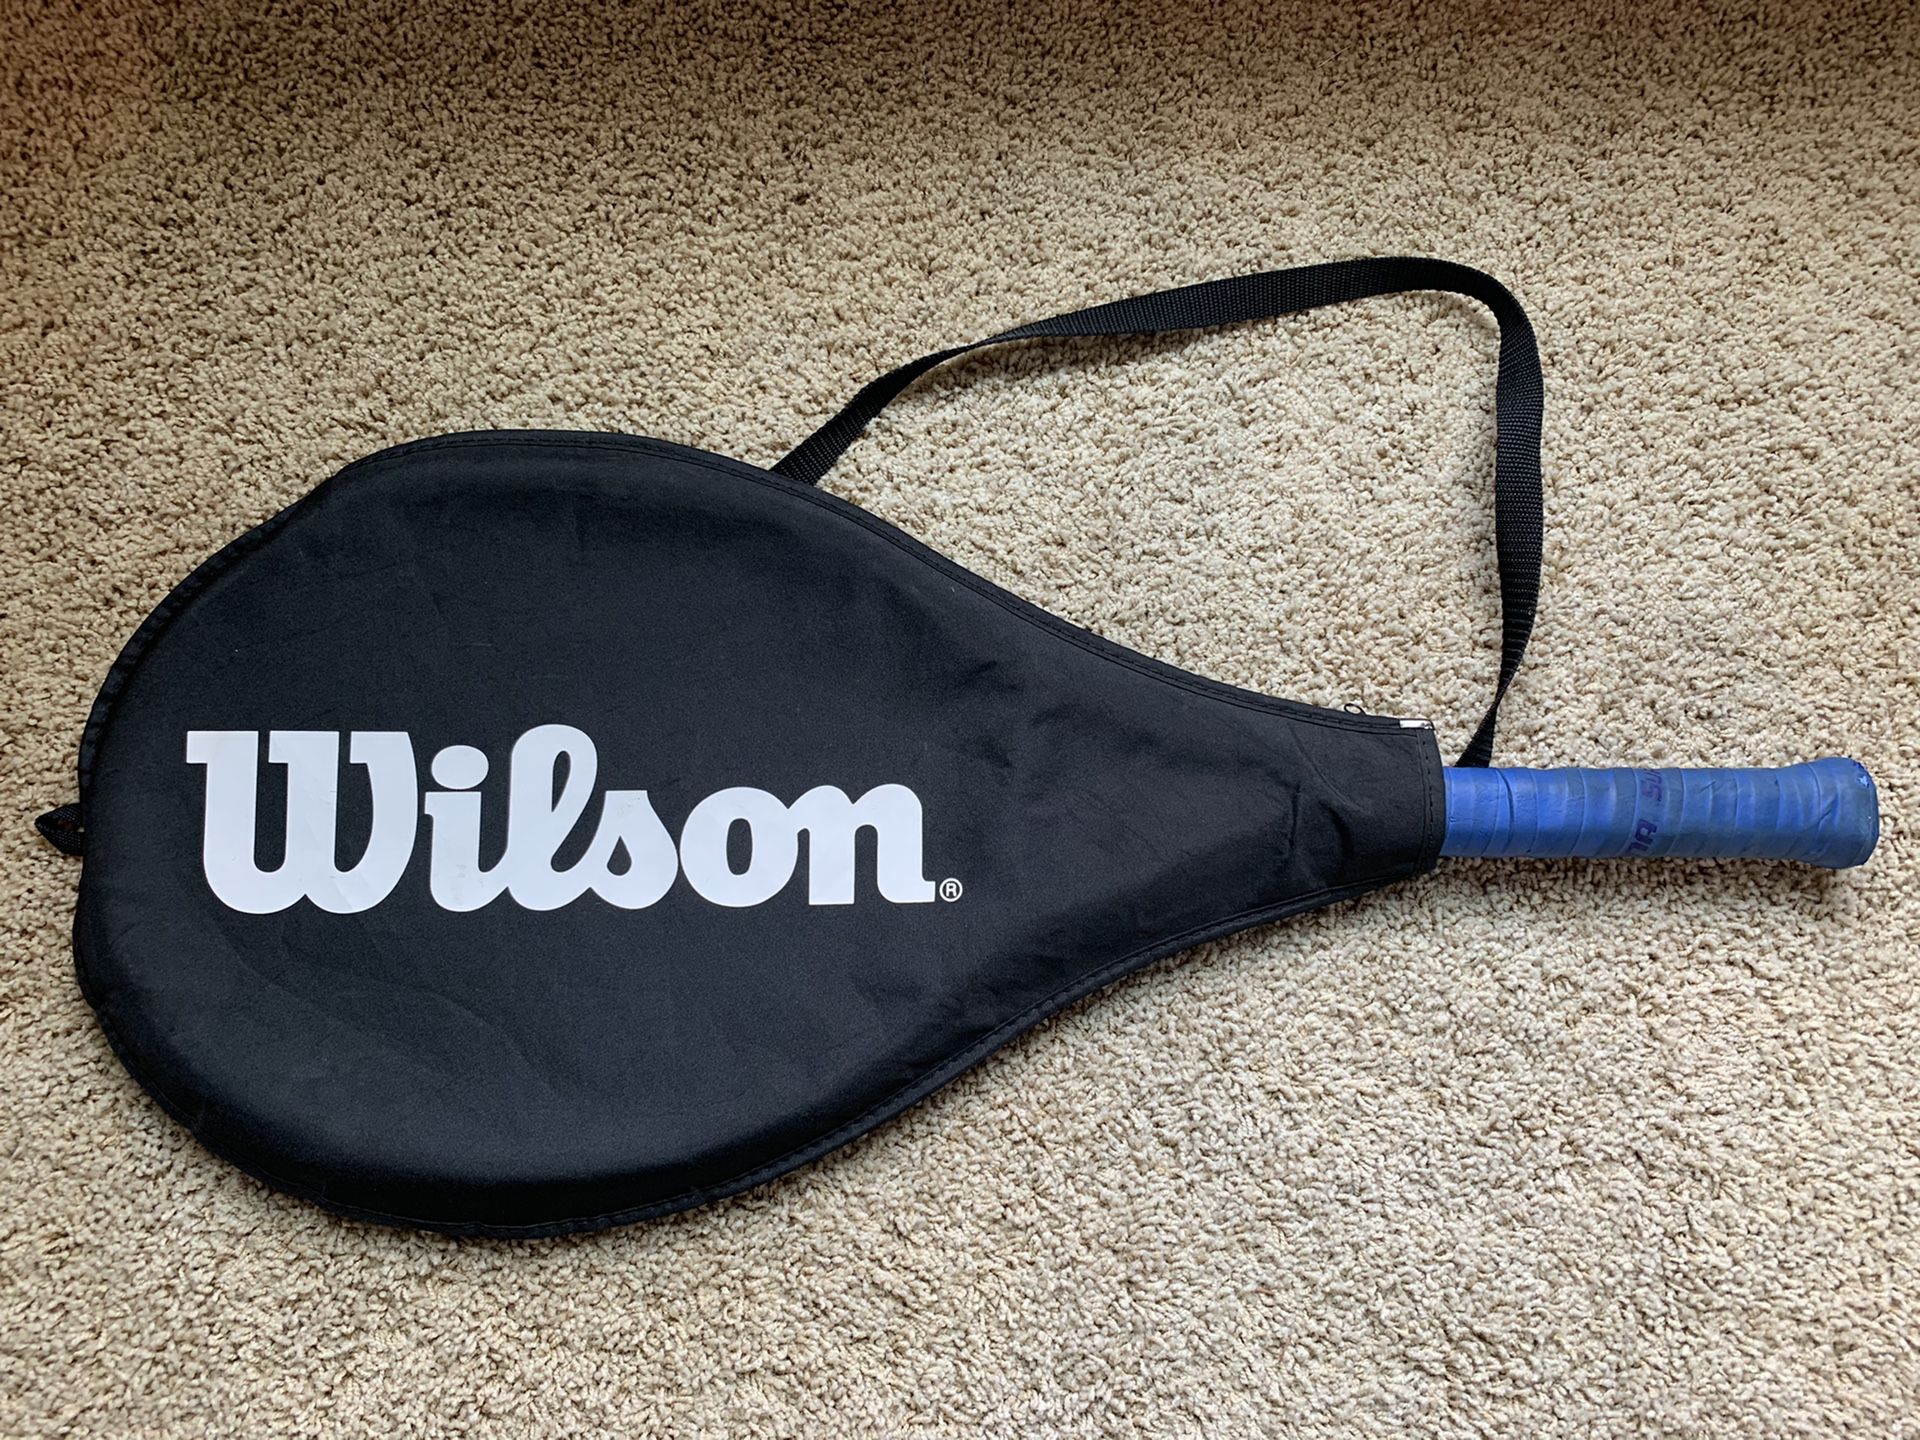 Wilson n6 hybrid tennis racket